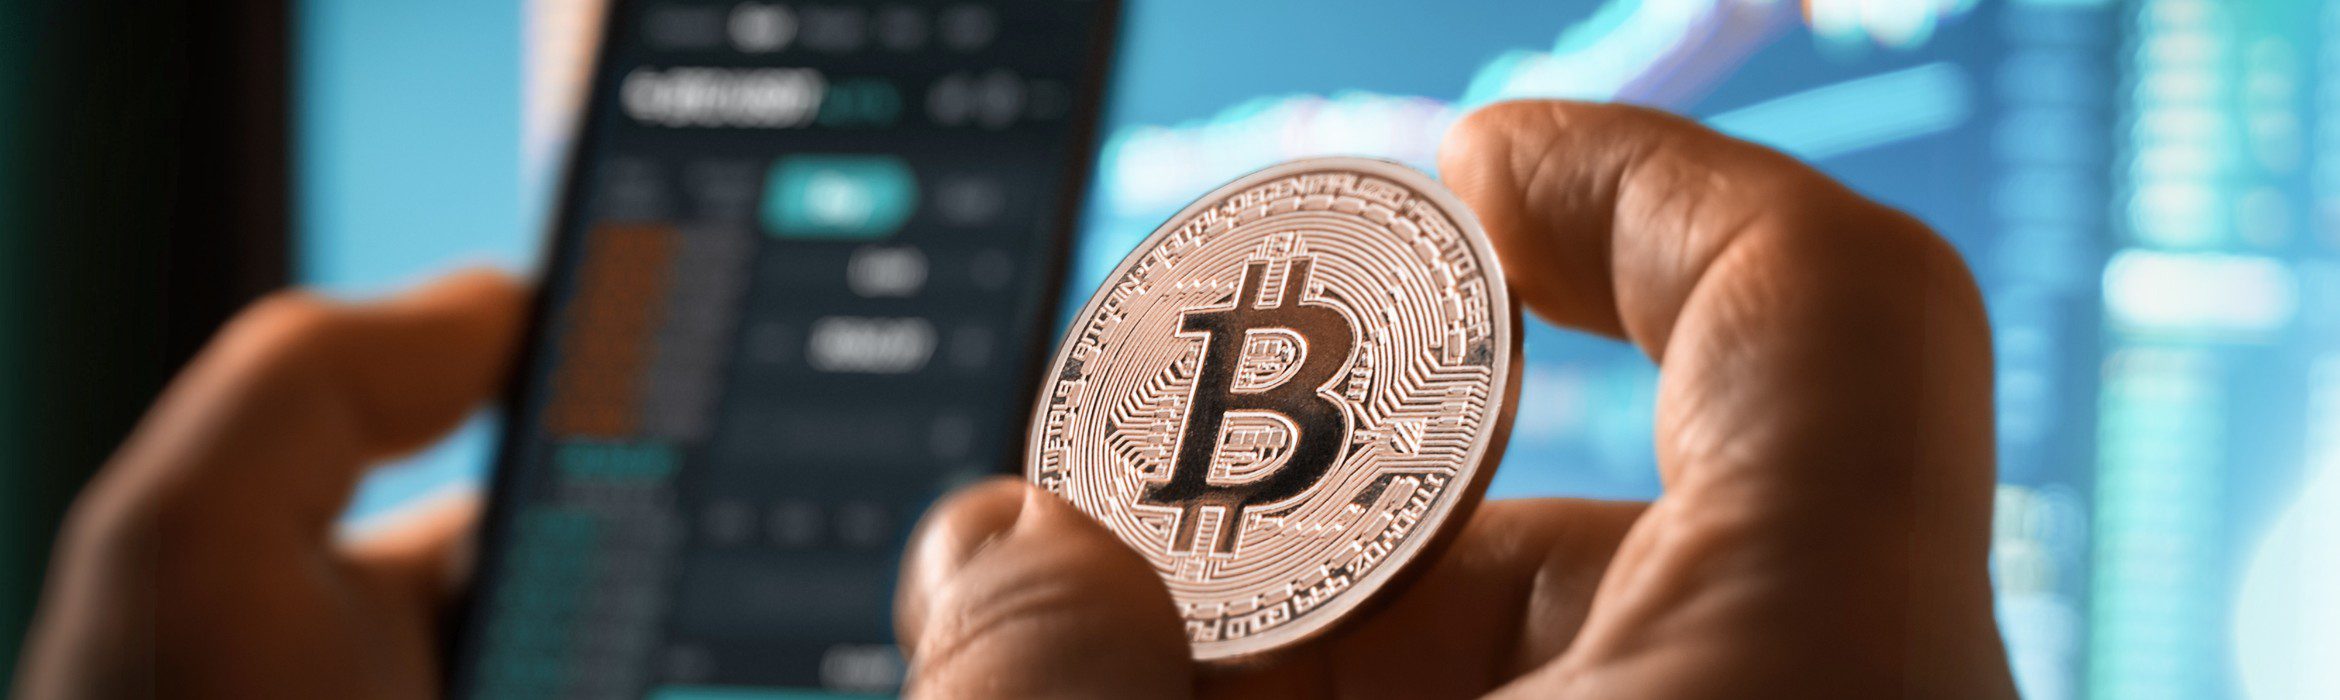 invest in cryptocurrency Die besten Bitcoin-Investitionsseiten